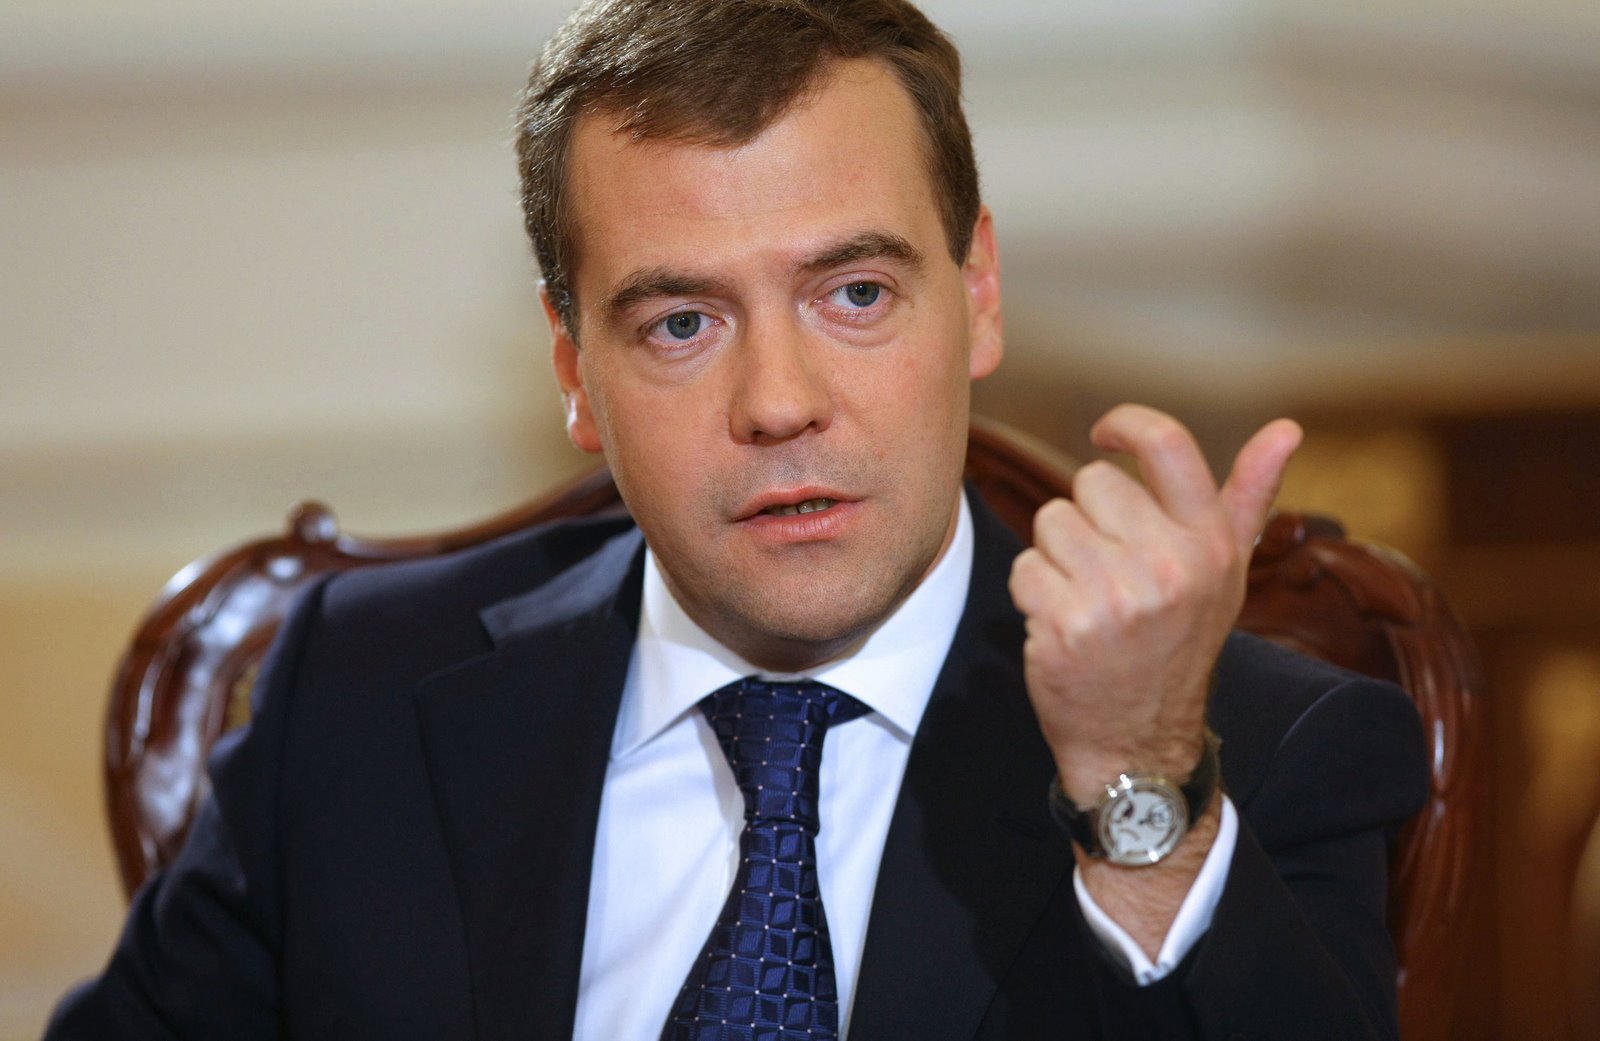 СРОЧНАЯ НОВОСТЬ! Медведев в Израиле заявил, что Путин из-за проблем со здоровьем может досрочно оставить президентство